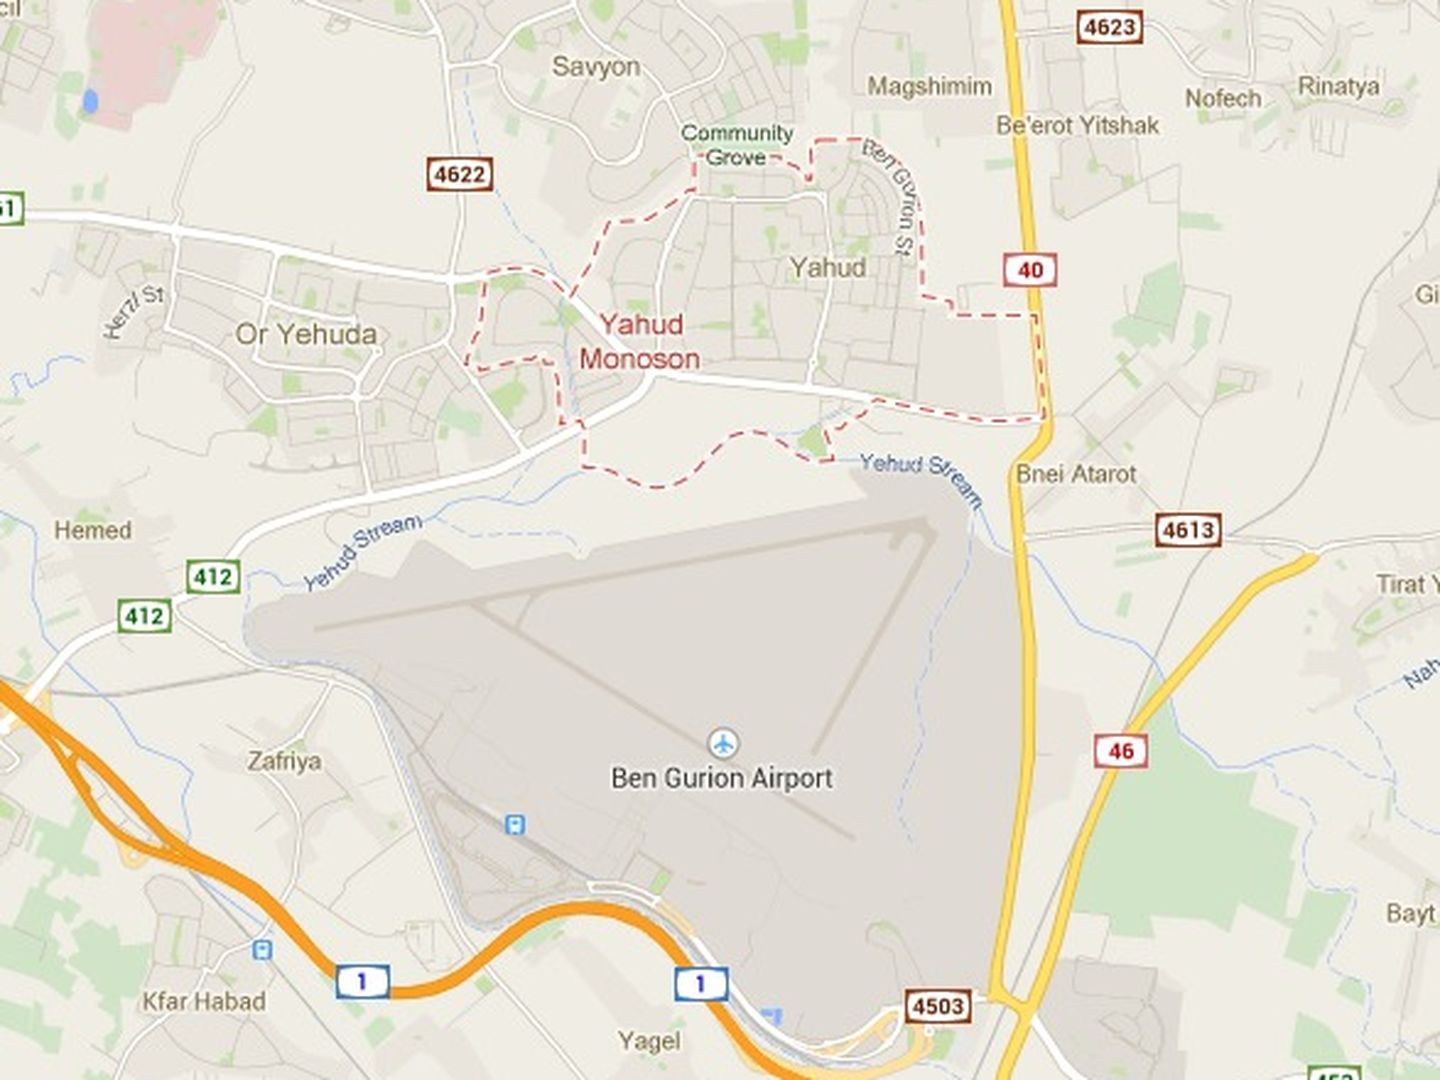 La localidad de Yehud, donde impactó el cohete, está a solo 2 kilómetros del aeropuerto